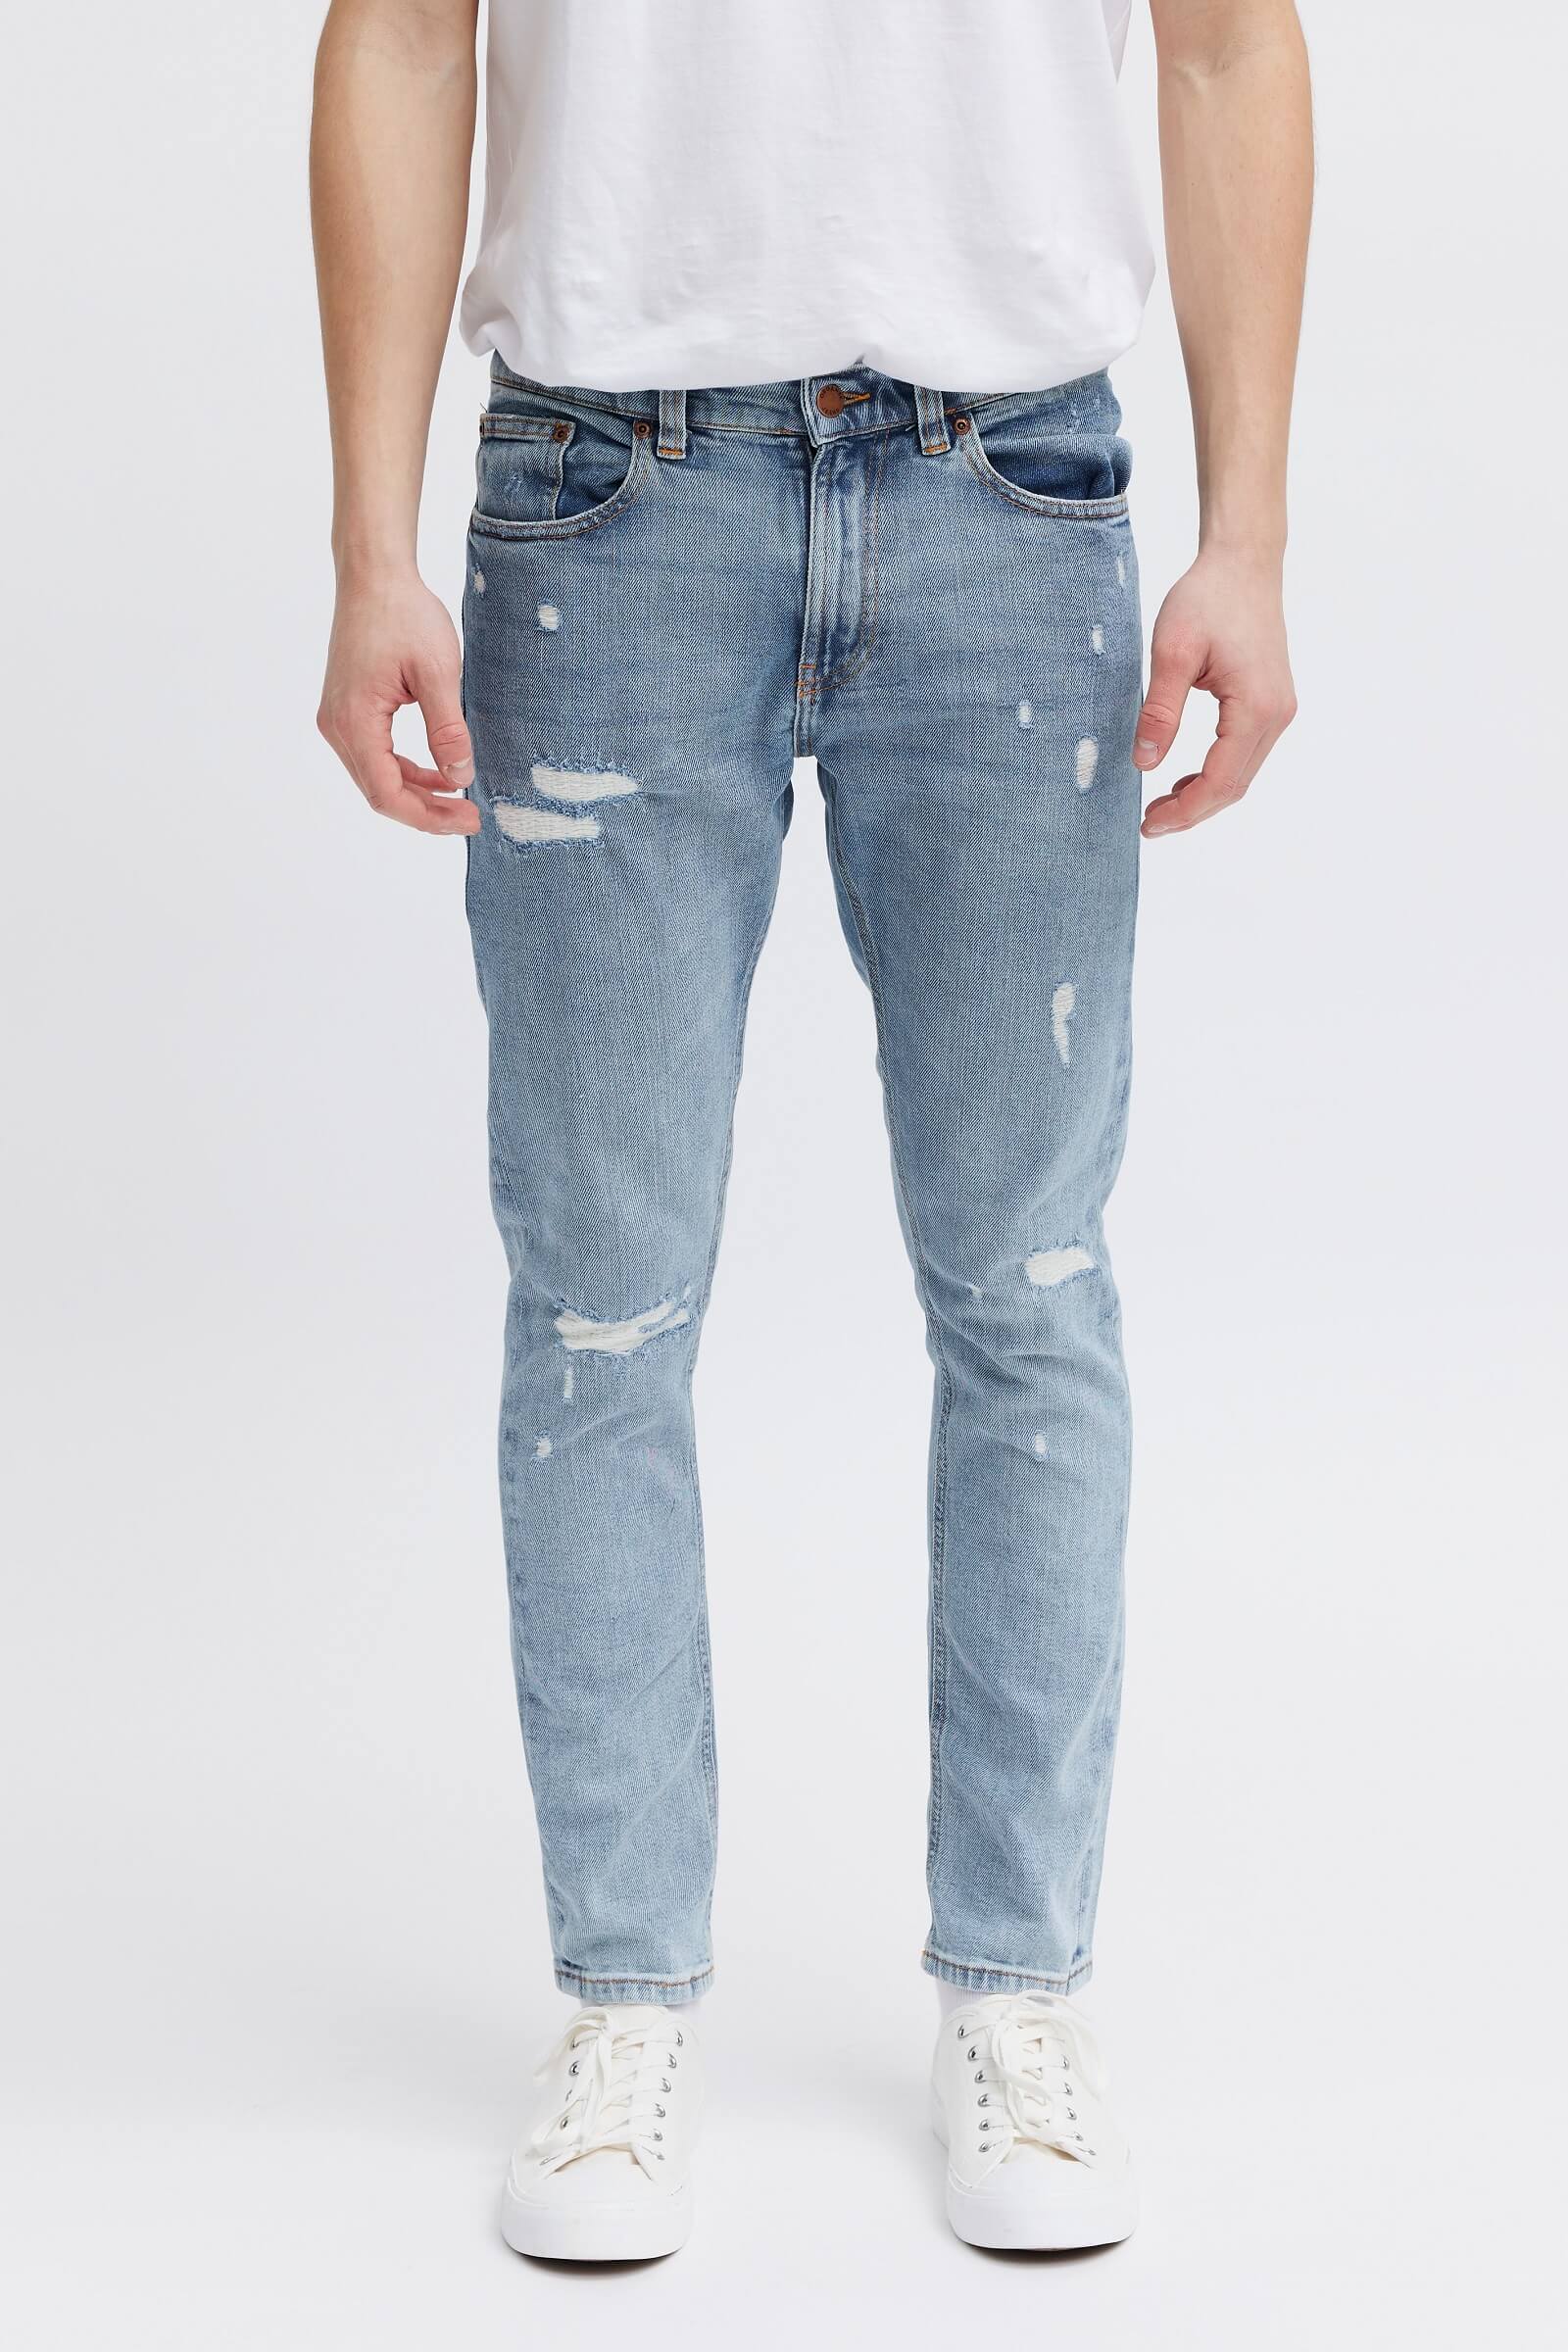 Bank Ejeren kunstner O2 Jeans til Mænd | Slim Tilspidset Fit med Rips & Slitage | Økologisk –  organsk®